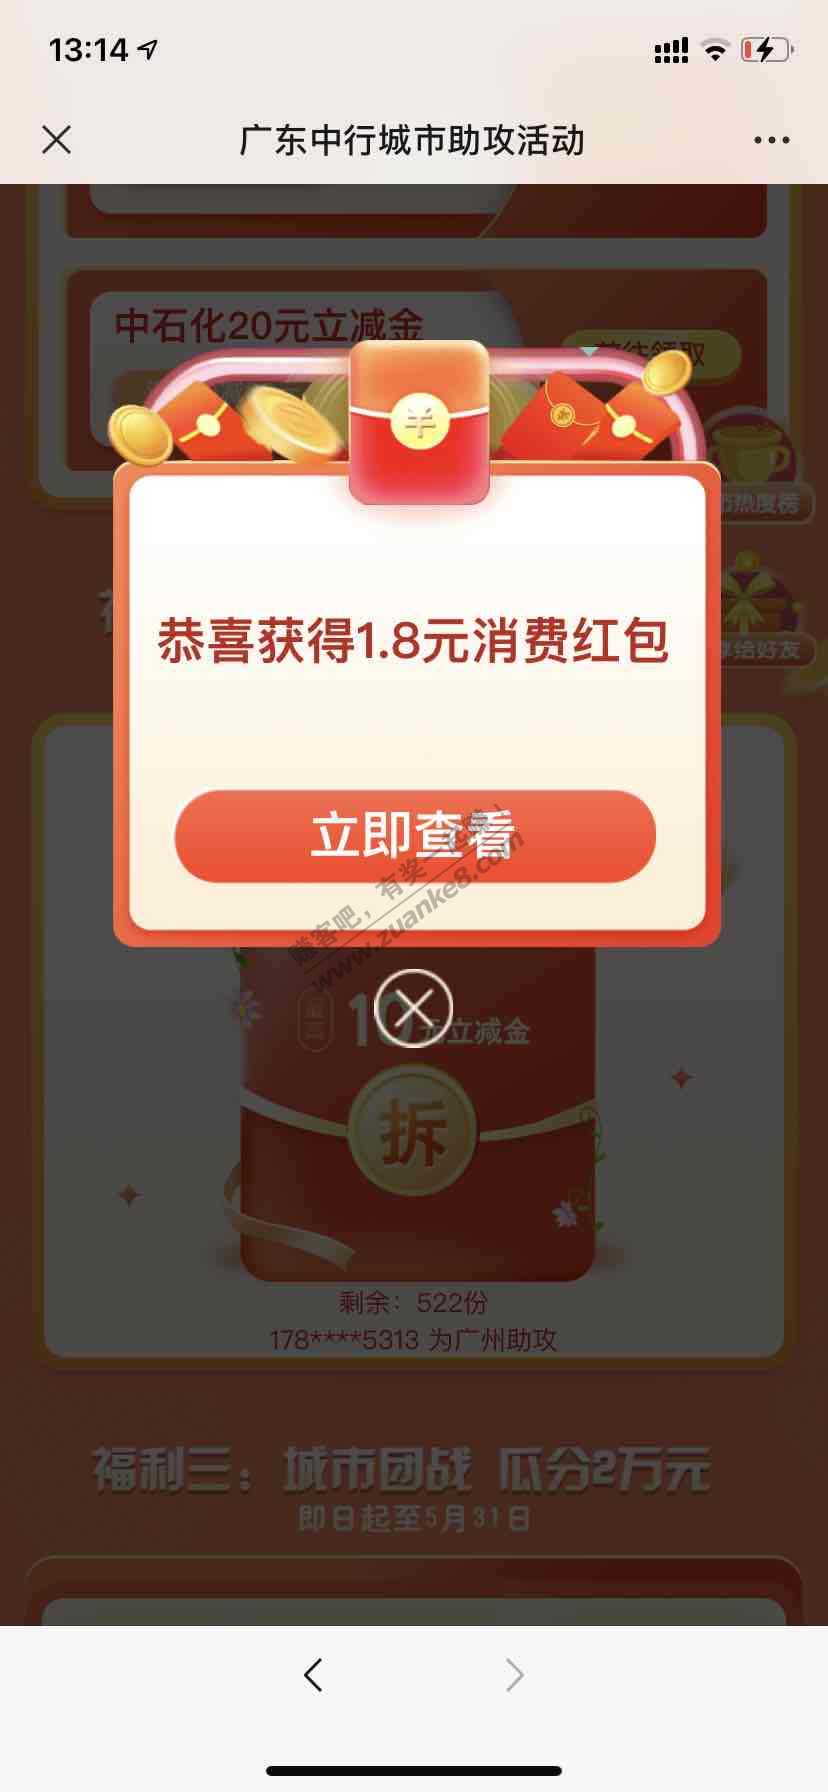 广东中行立减金-我广州的显示还剩500多份-惠小助(52huixz.com)